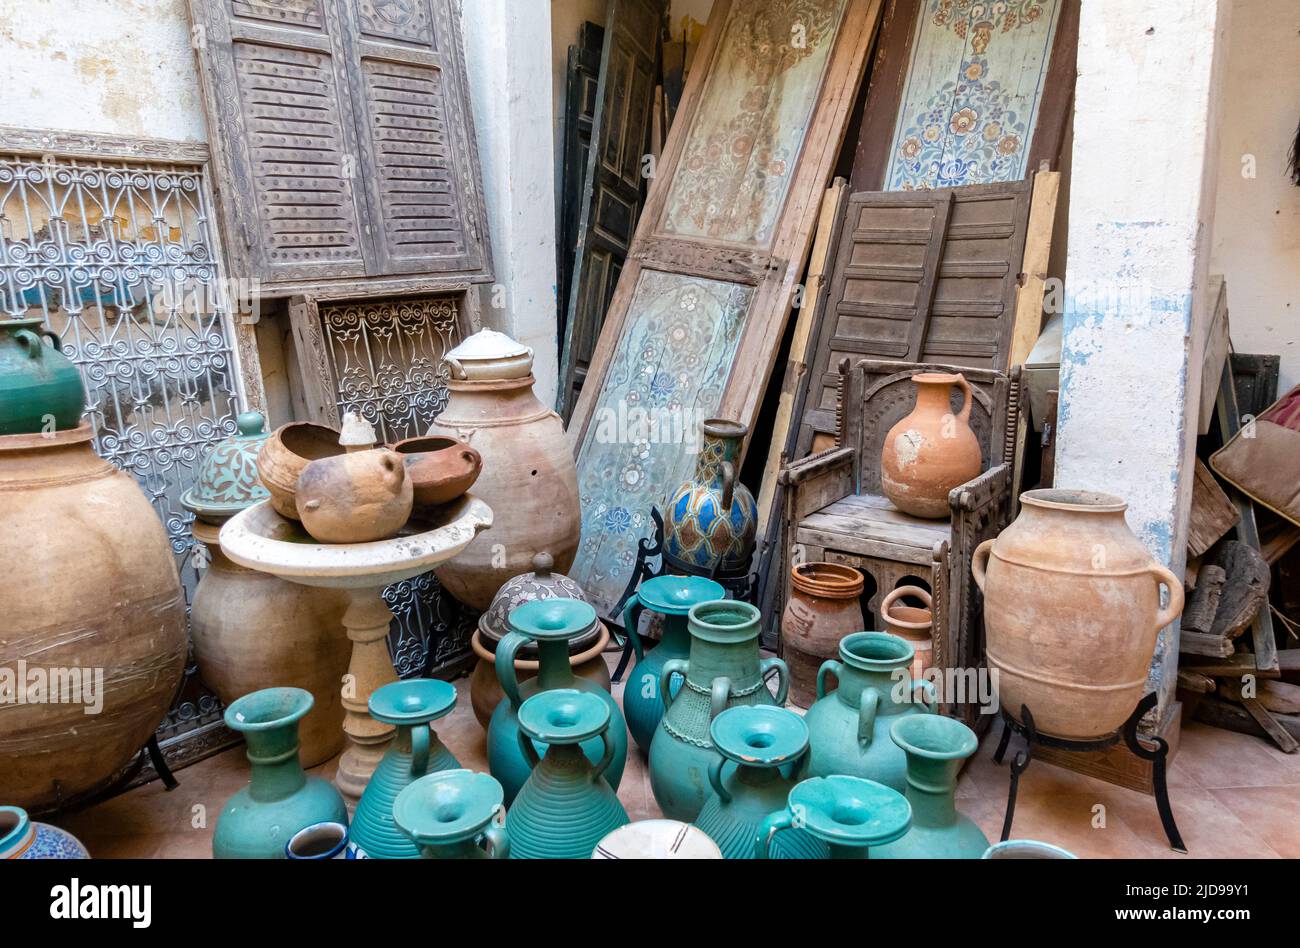 Assortiment de poteries marocaines vendues dans un magasin de Marrakech, au Maroc Banque D'Images